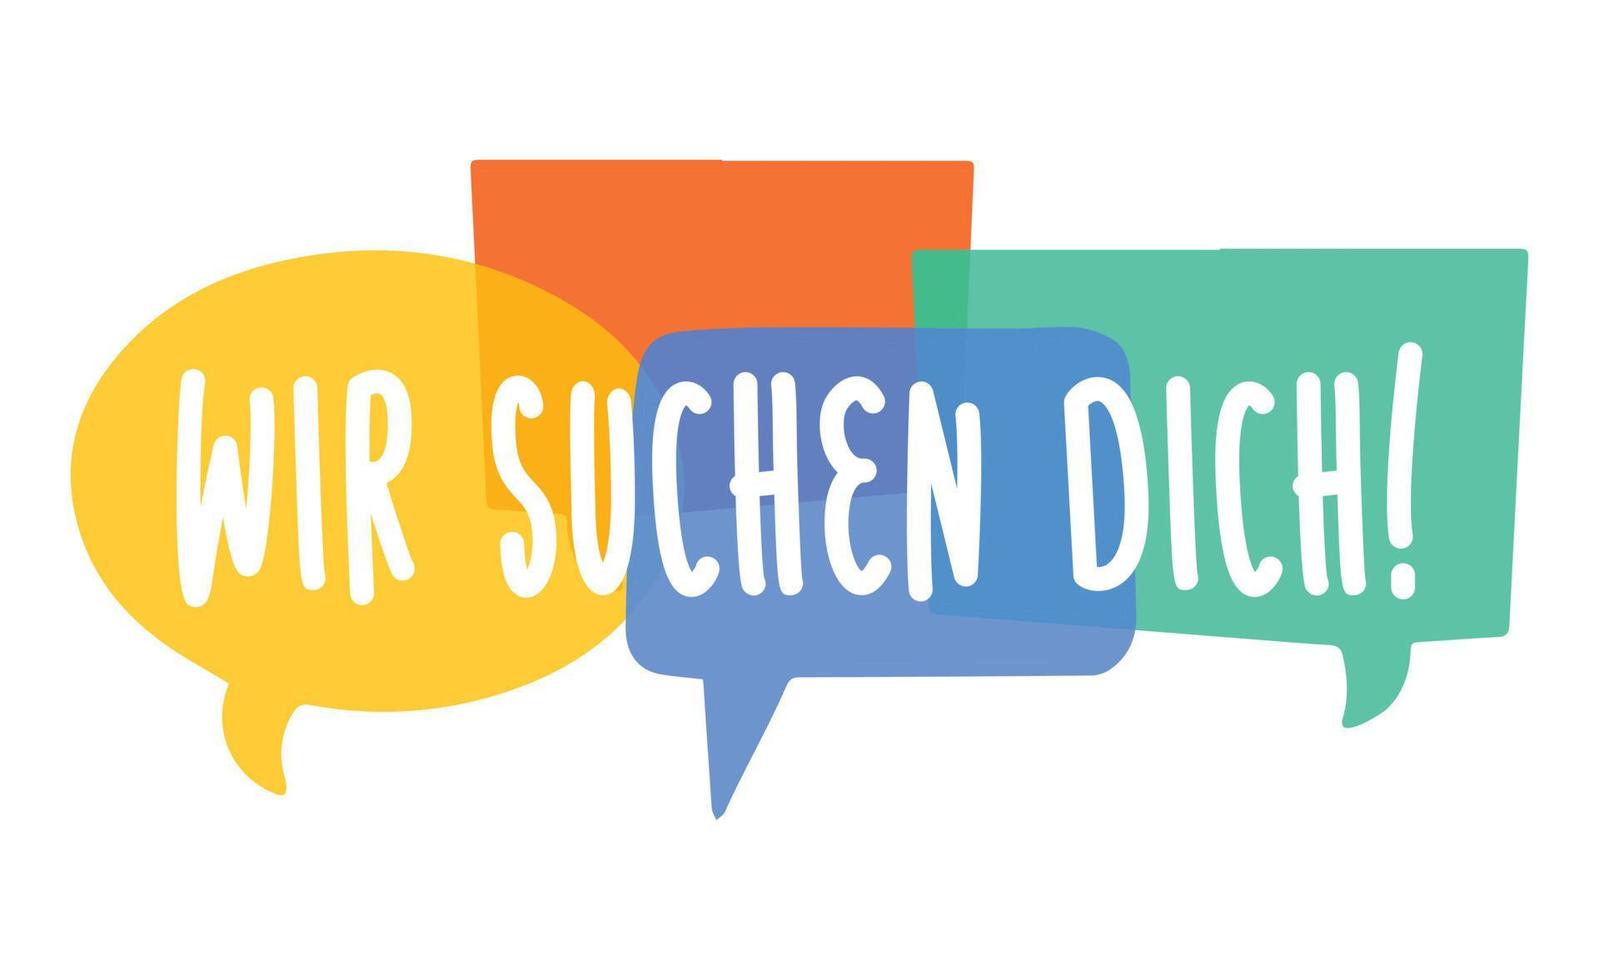 wir suchen dich - tysk översättning - vi söker dig. rekrytering affisch vektor design med ljusa pratbubblor. mall för lediga tjänster. jobböppning, sök.